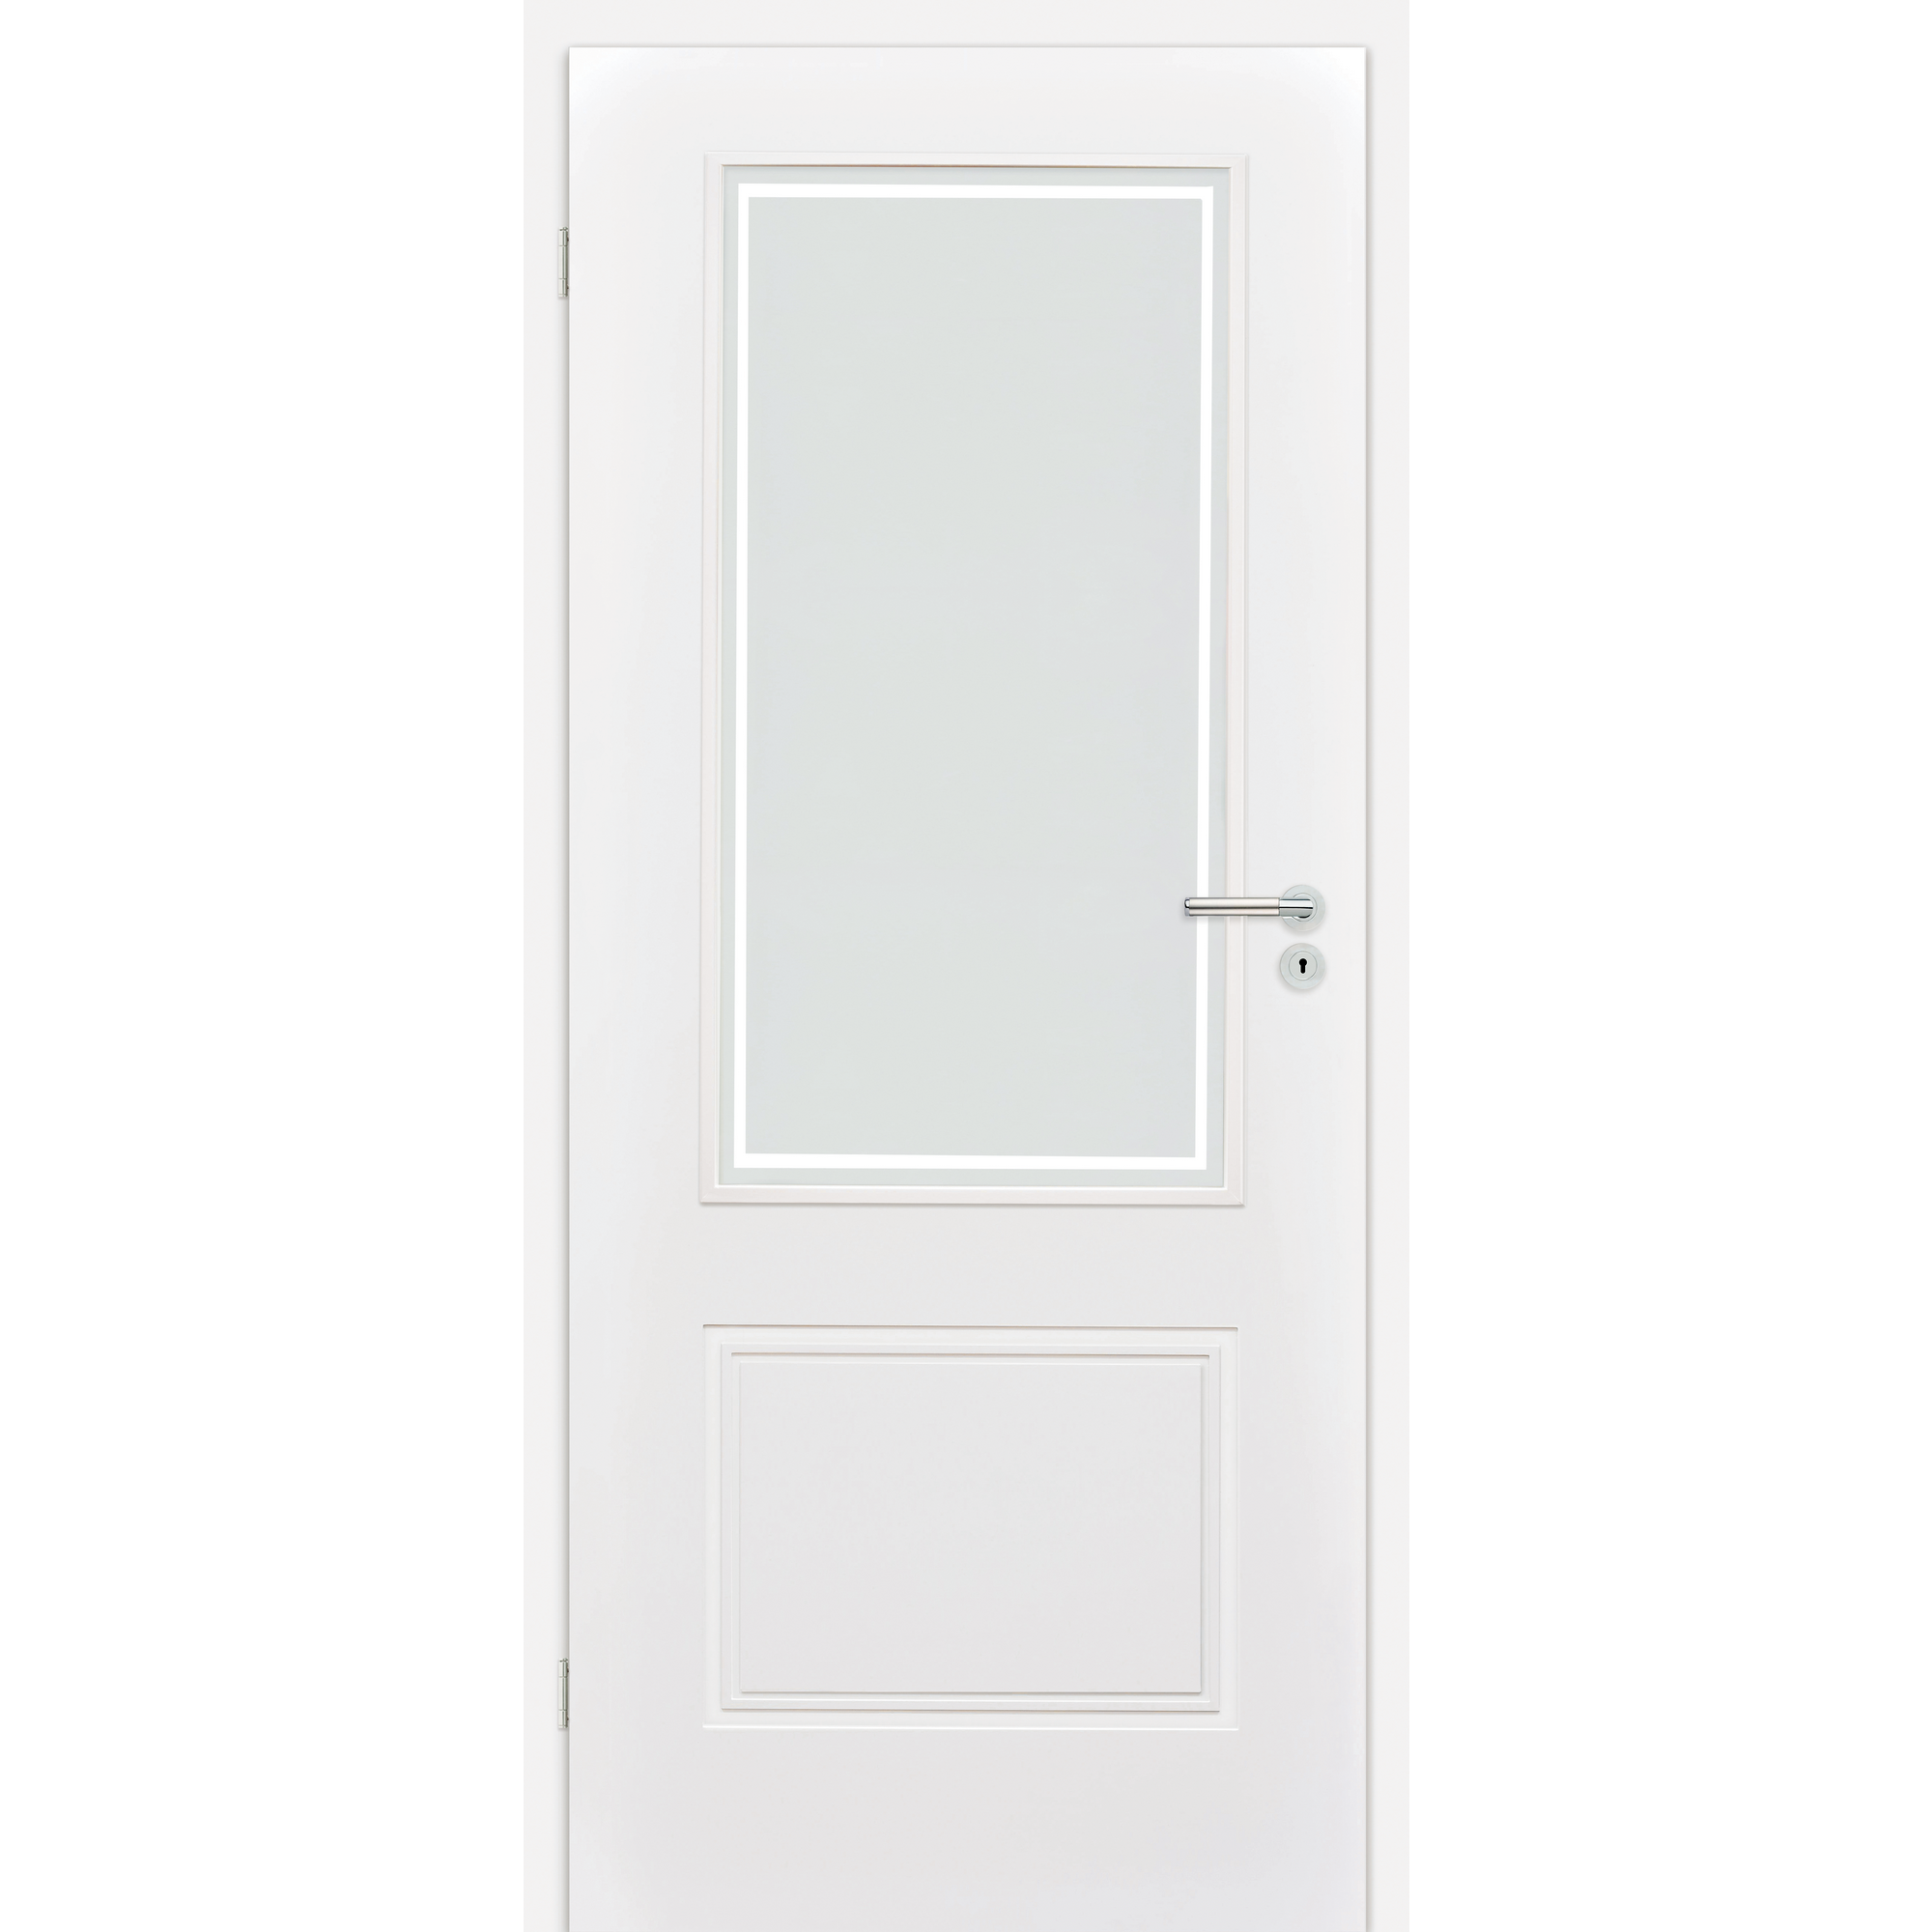 Innentür 'Linea 1.3' mit Lichtausschnitt weiß 198,5 x 98,5 cm, Linksanschlag + product picture